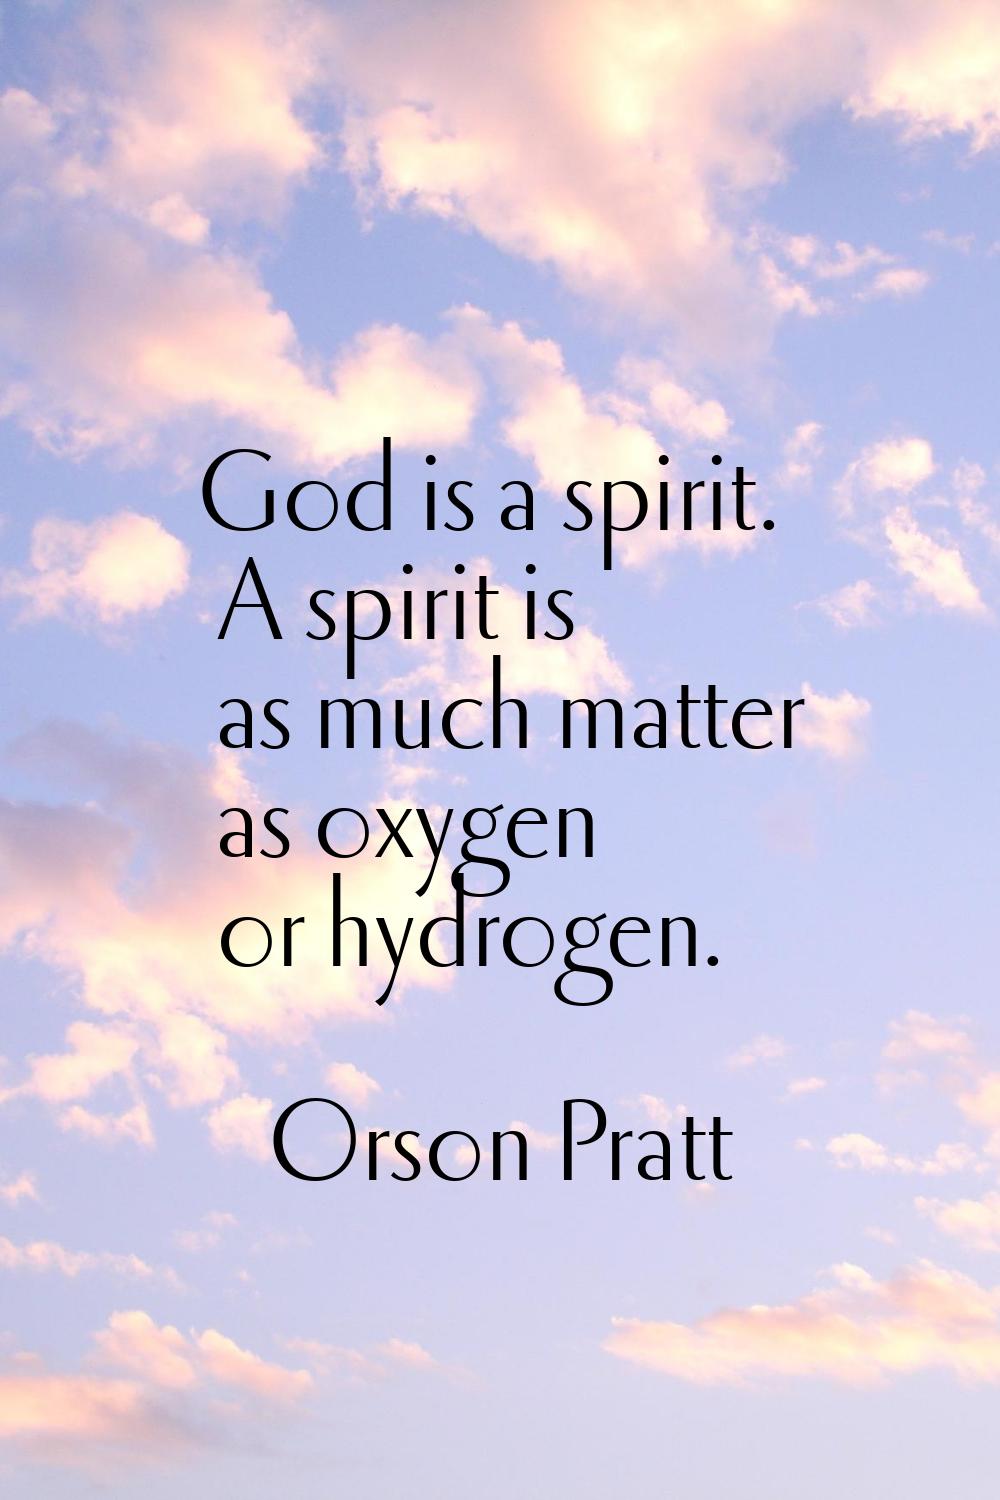 God is a spirit. A spirit is as much matter as oxygen or hydrogen.